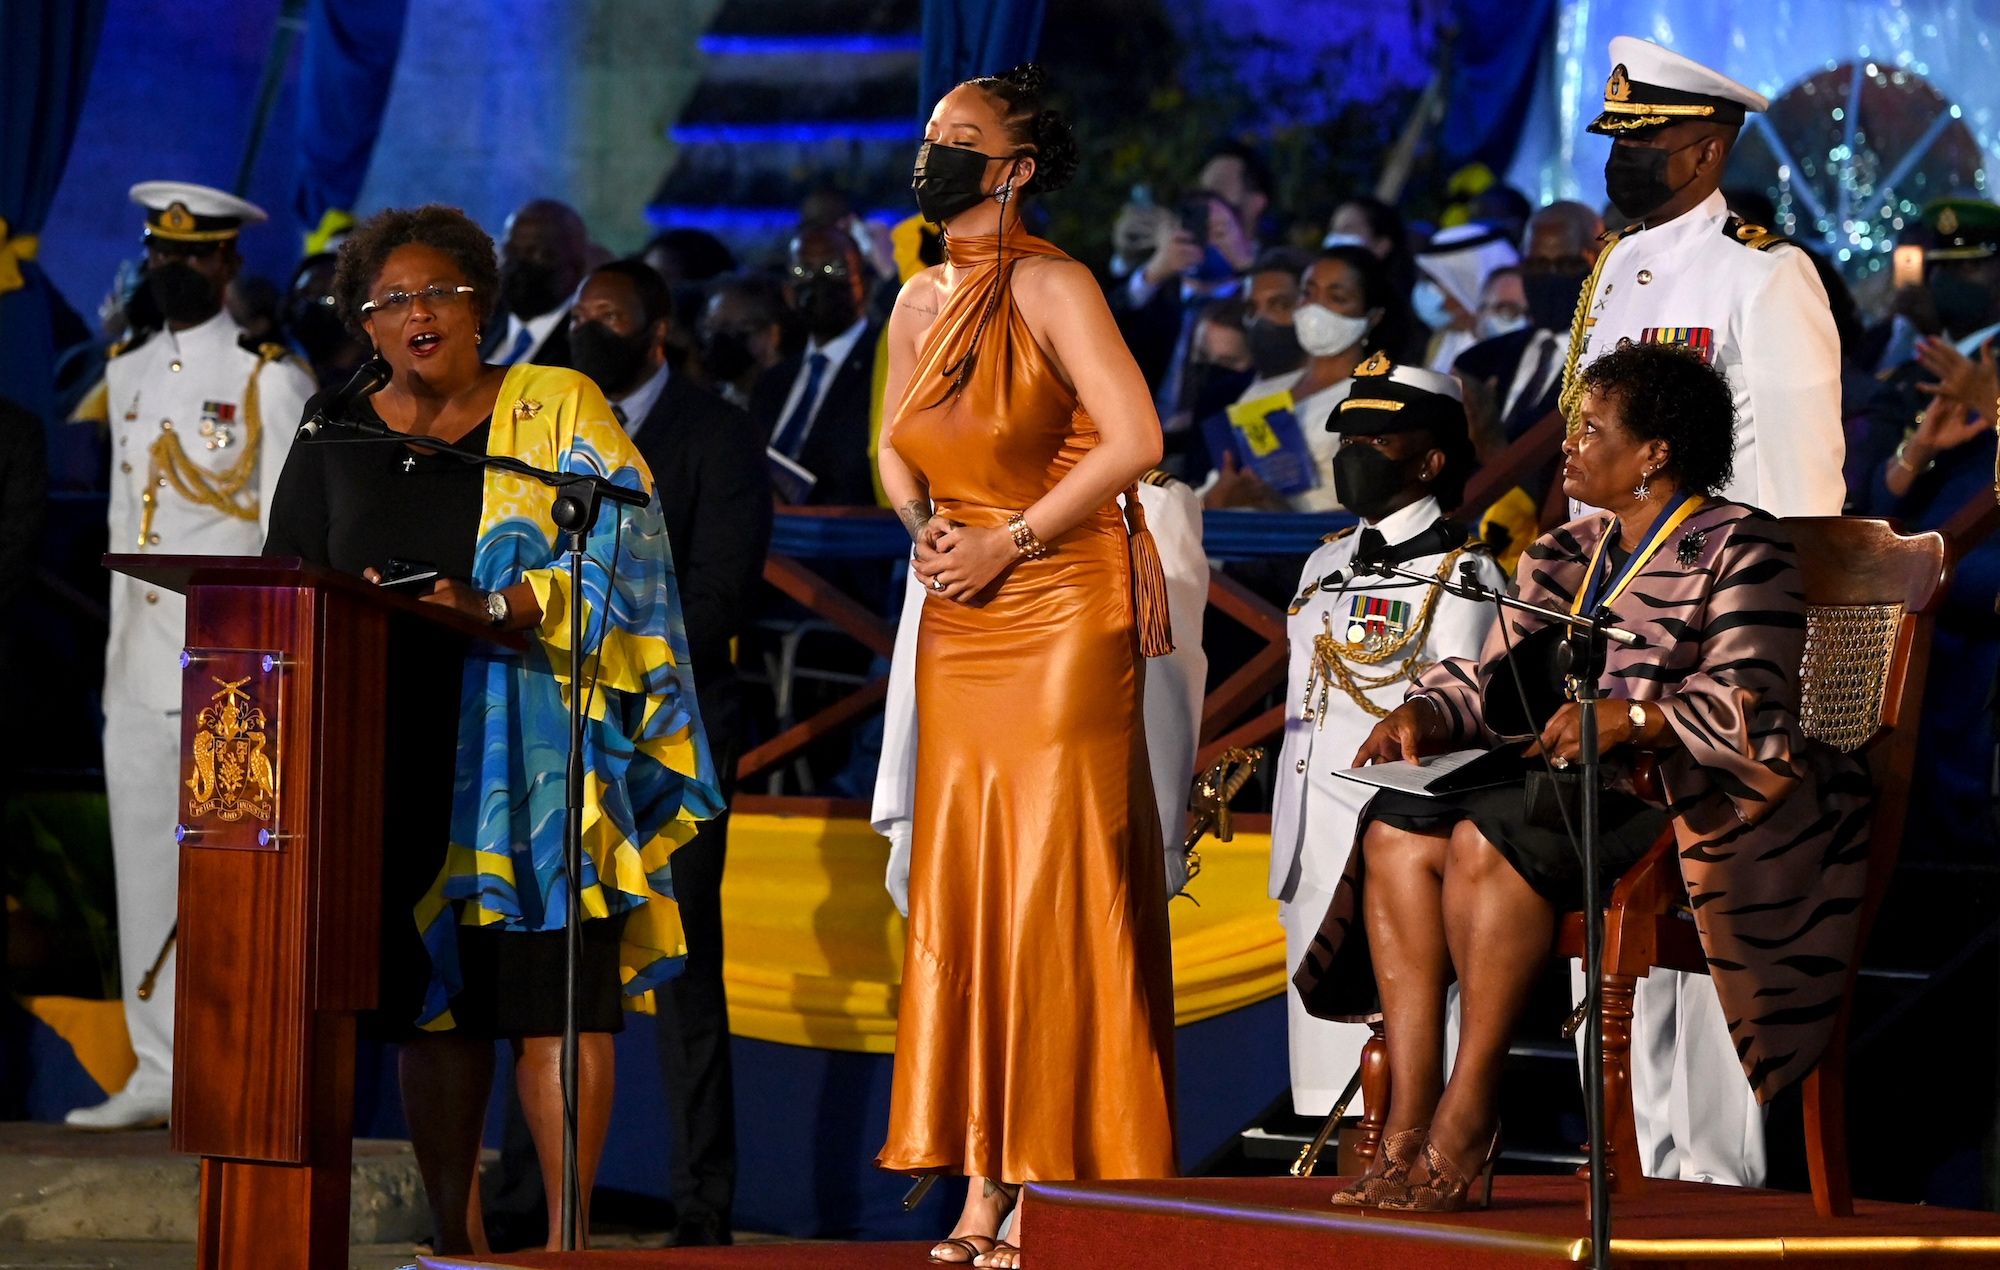 La République de la Barbade est née, Rihanna déclarée héroïne nationale